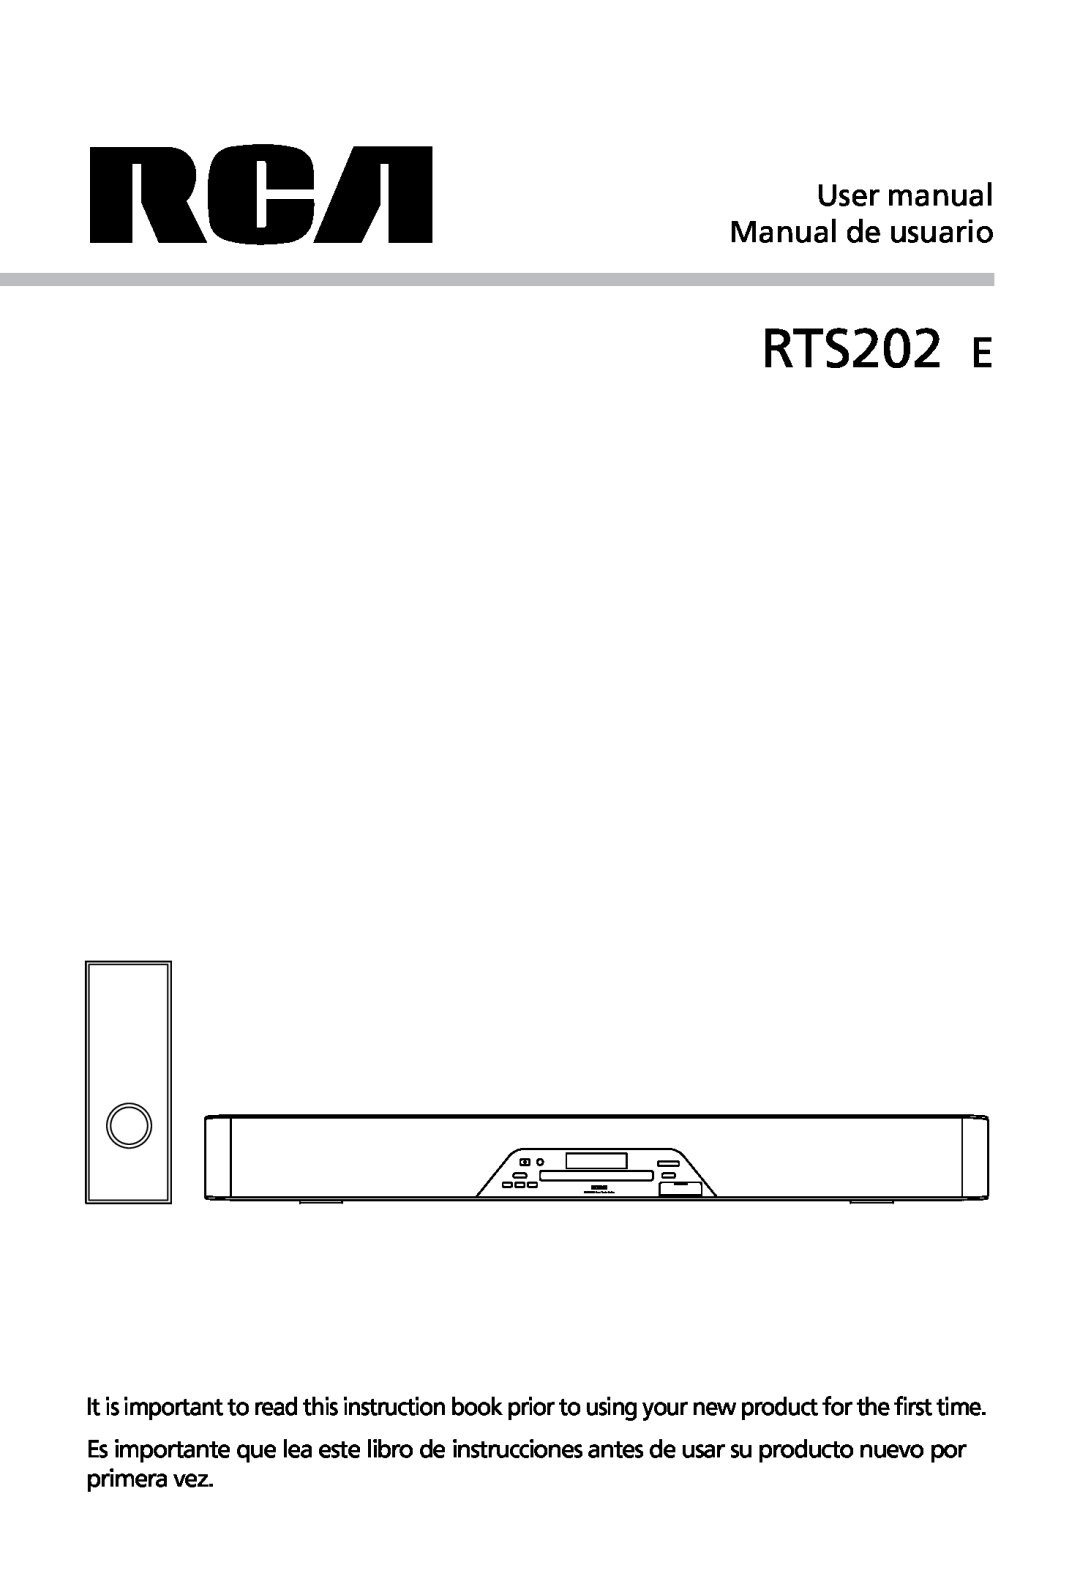 RCA user manual RTS202 E 